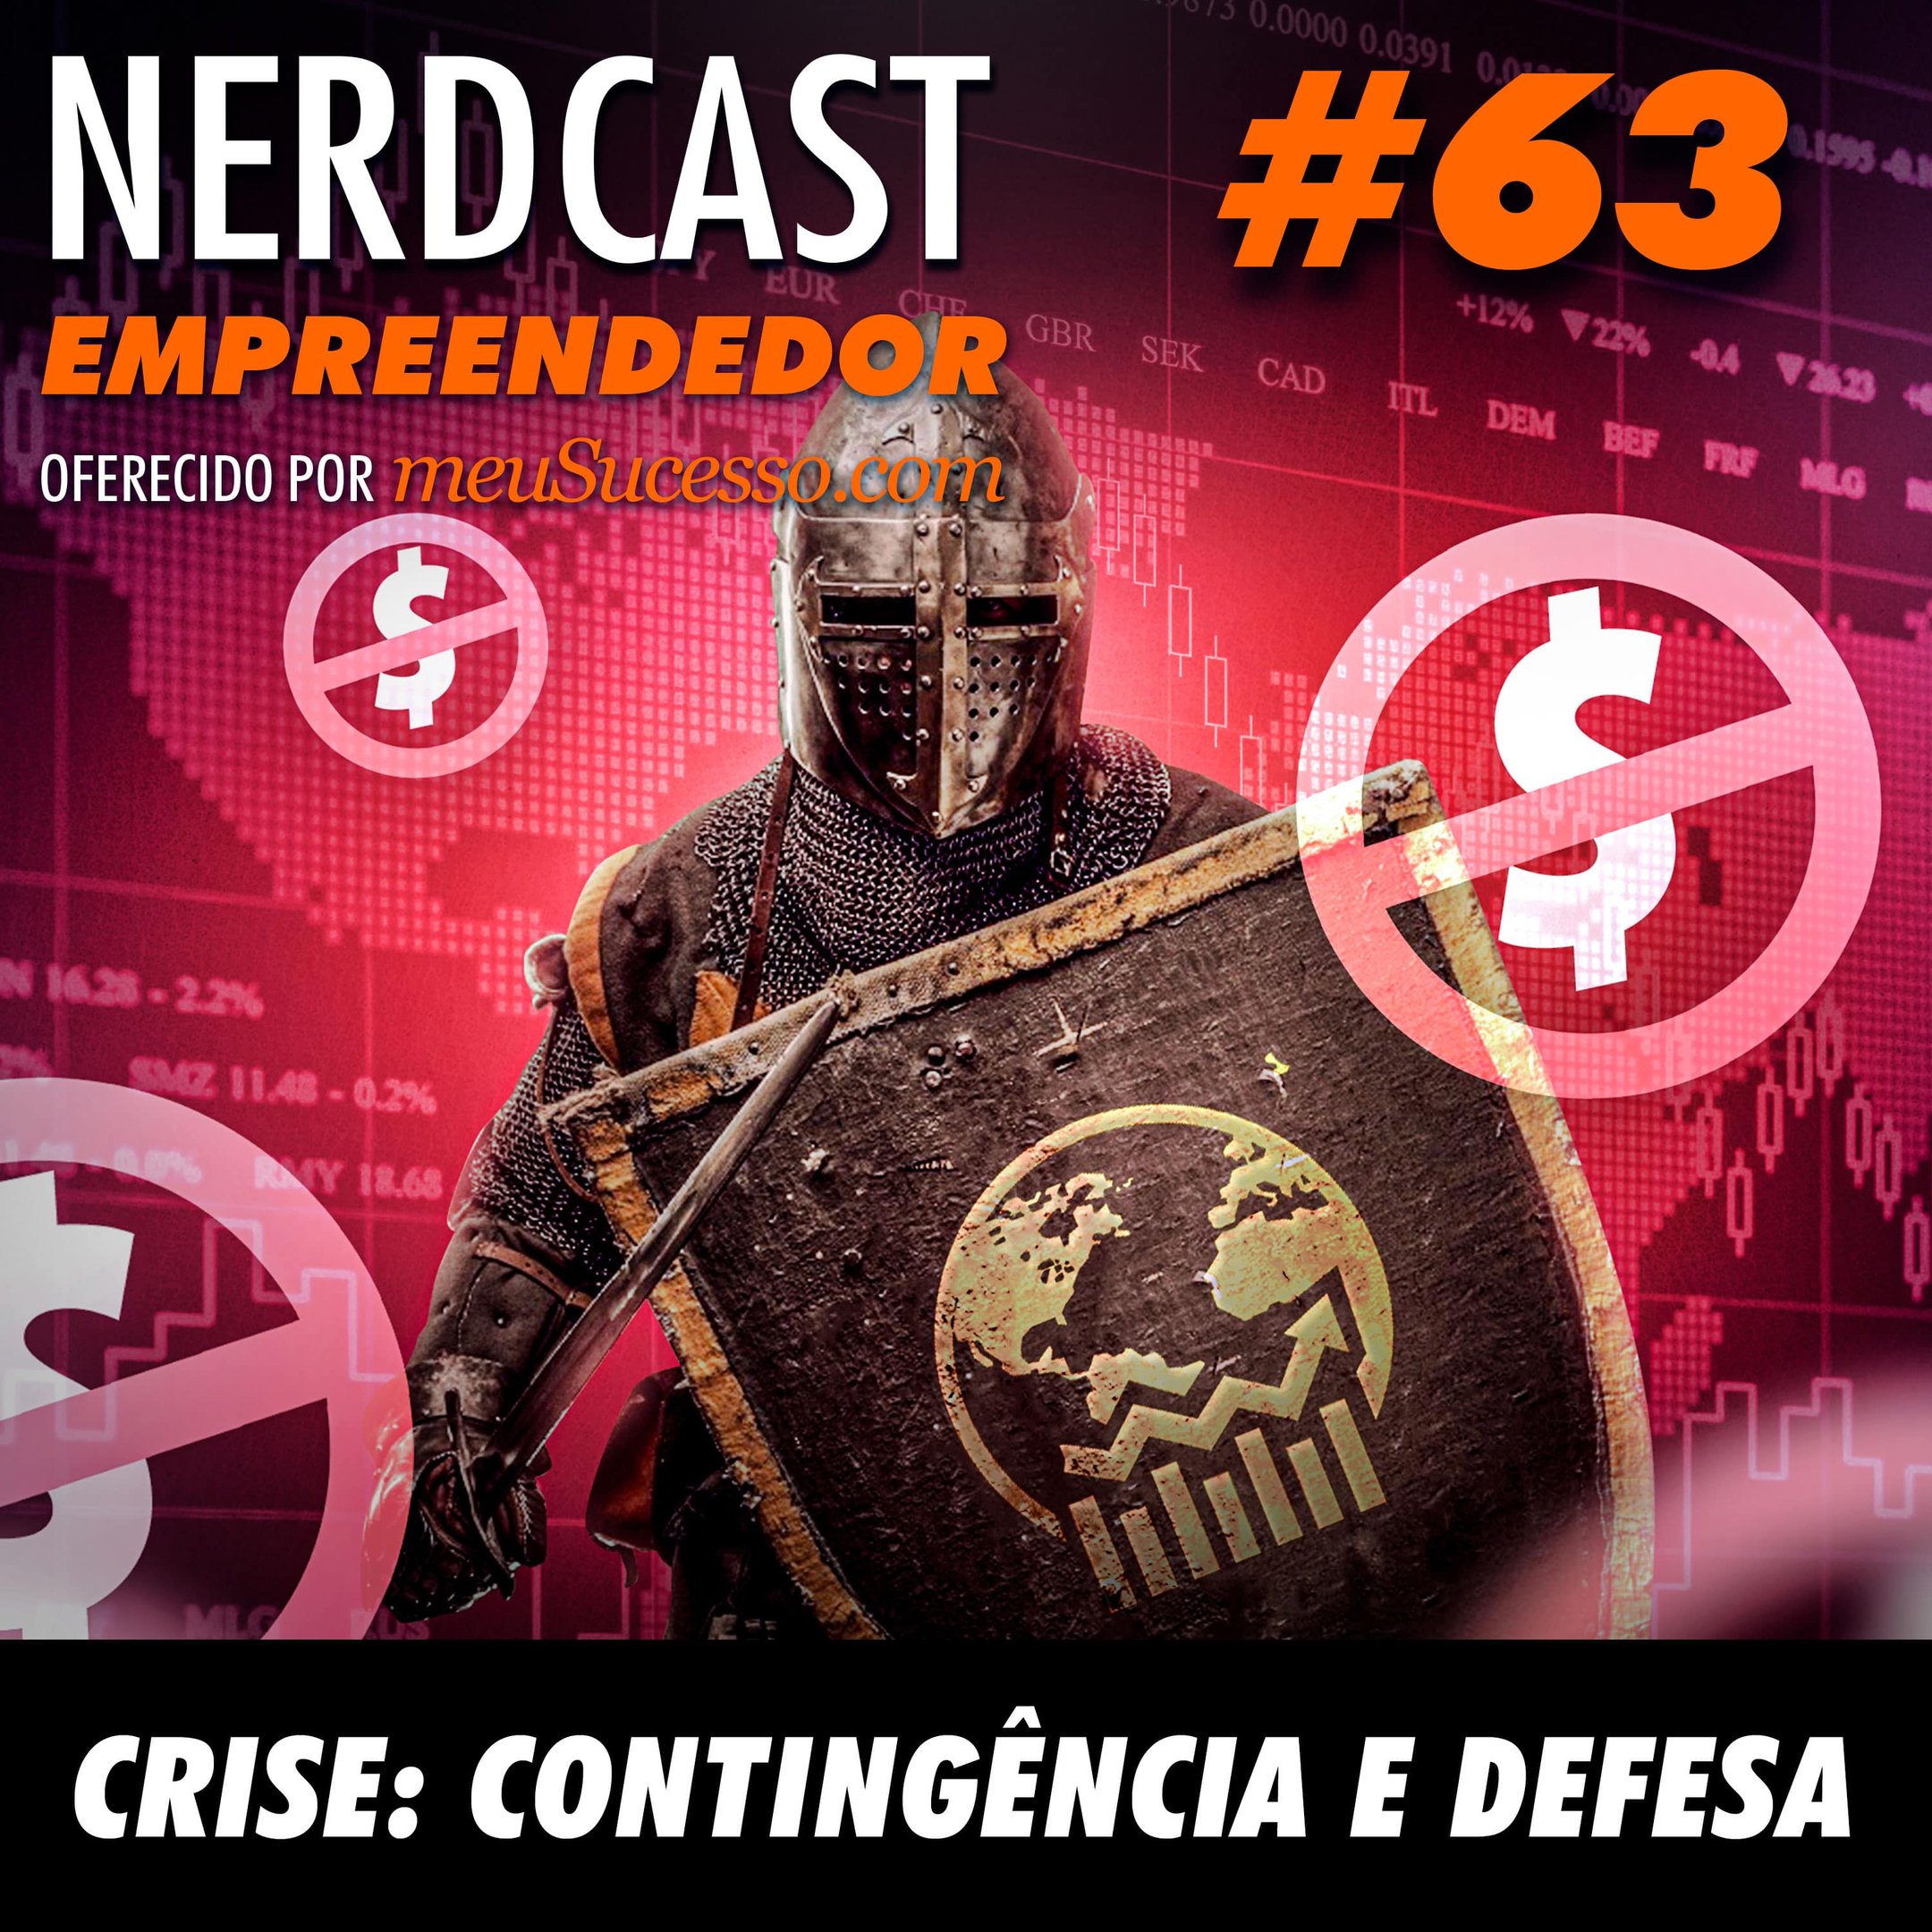 Empreendedor 63 - Crise: Contingência e defesa